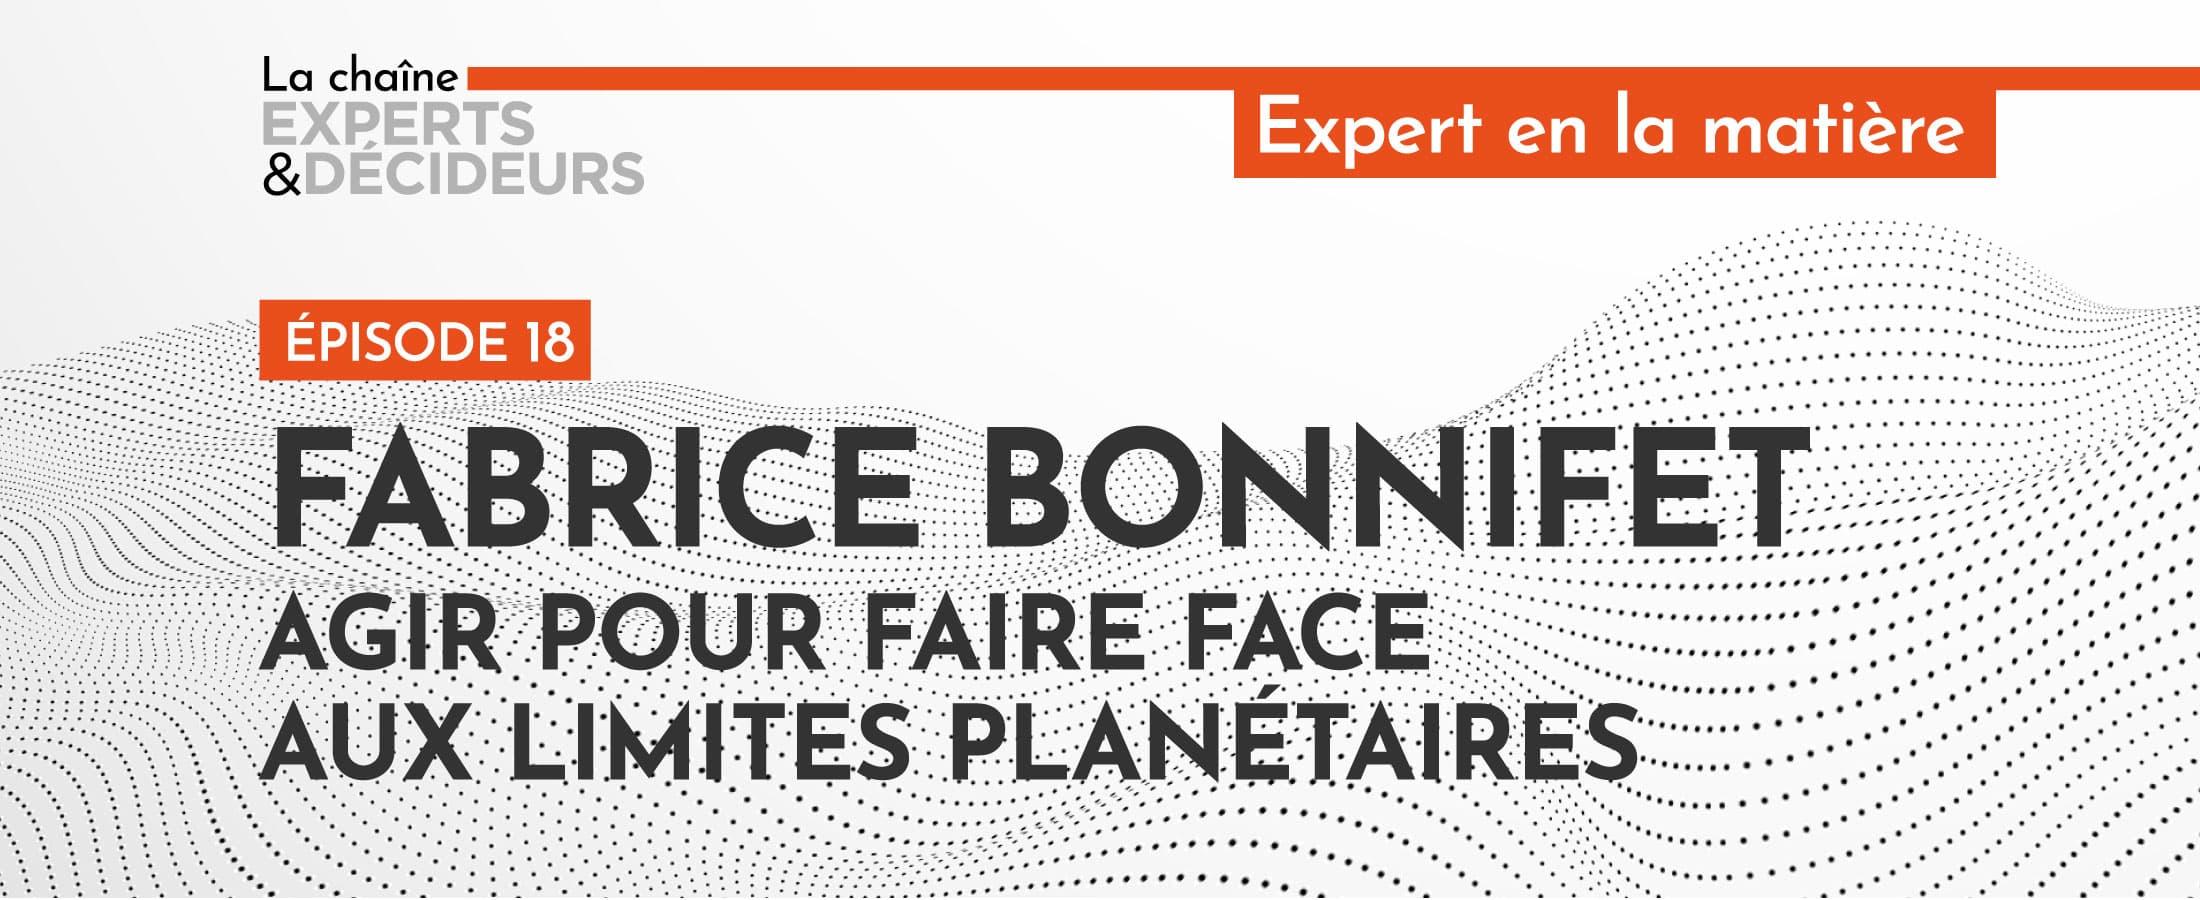 [Podcast] Fabrice Bonnifet : Agir pour faire face aux limites planétaires